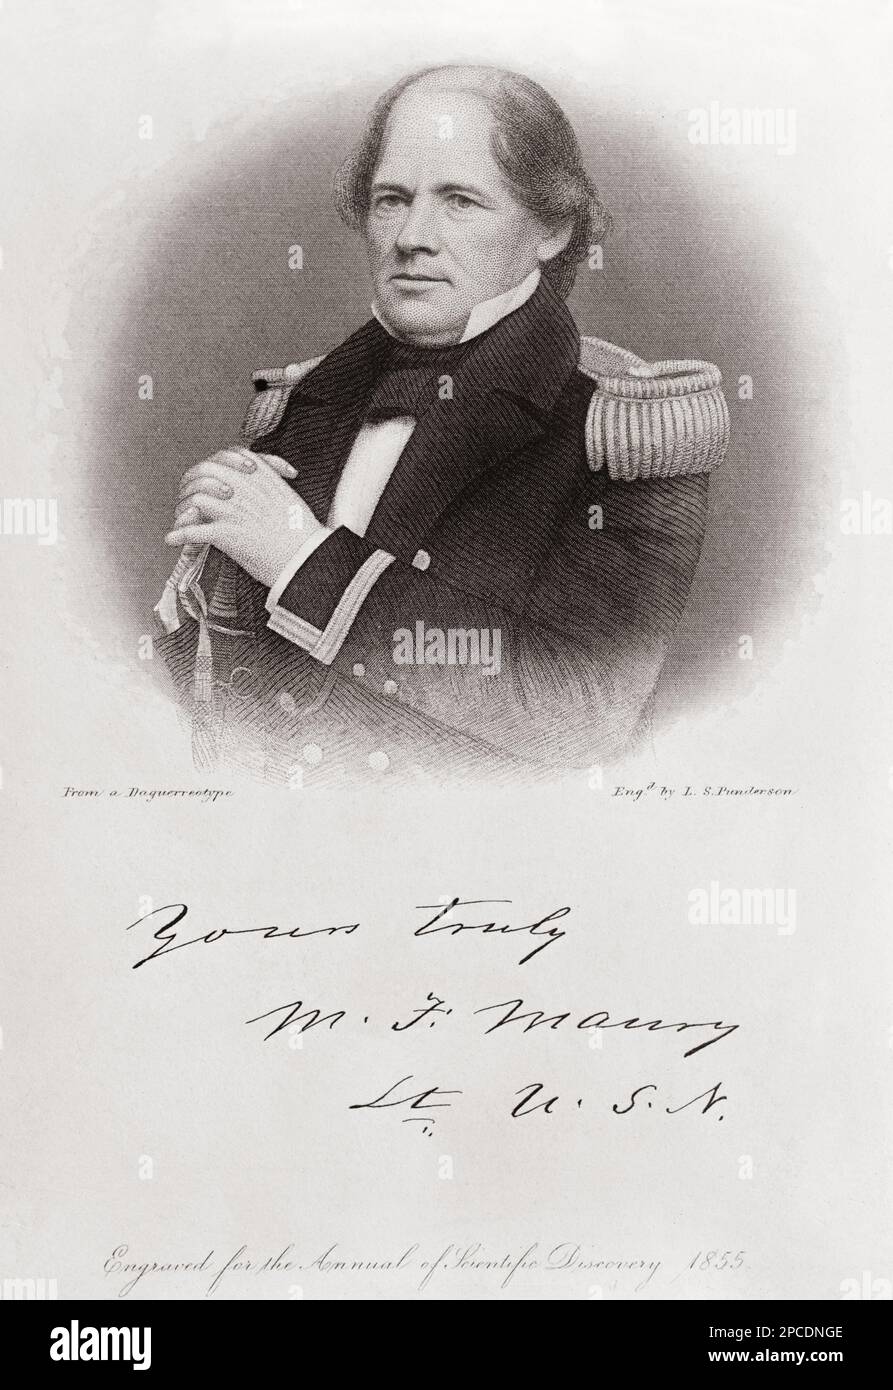 Der amerikanische Matthew Fontaine MAURY ( 1806 - 1873 ) der US Navy war ein amerikanischer Astronome, Historiker, Ozeanographin, Meteorologe, Kartograf, Autor, Geologe und Pädagoge. Gravur eines Porträts von einem Daguerreotyp, eingraviert von L.S. Punderson , 1855, Für das "Jahr der wissenschaftlichen Entdeckung" - ASTRONOMO - ASTRONOMIE - ASTRONOMIE - CARTOGRAFIA - CARTOGRAFO - GEOLOGO - GEOLOGE - foto Storiche - foto storica - scienziato - Wissenschaftler - Gravur - Incisione - SCIENZIATO - WISSENSCHAFTLER - Uniforme divisa militare - Autografo - Autografo Unterschrift - Firma ---- Stockfoto